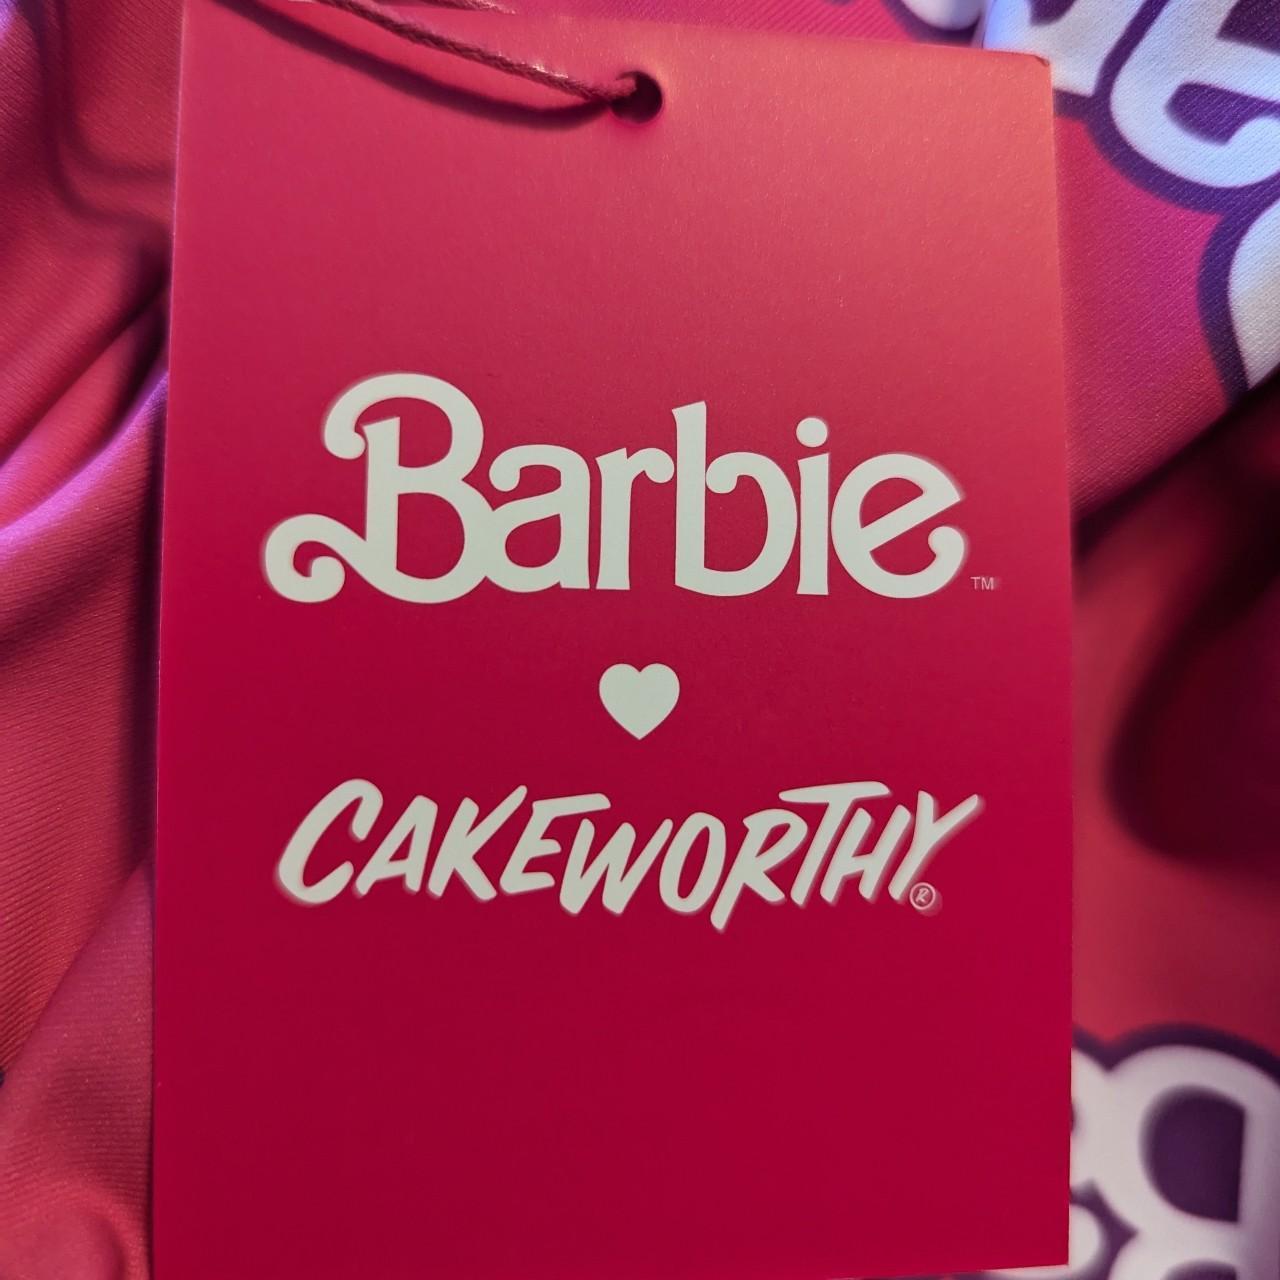 Barbie x Cakeworthy